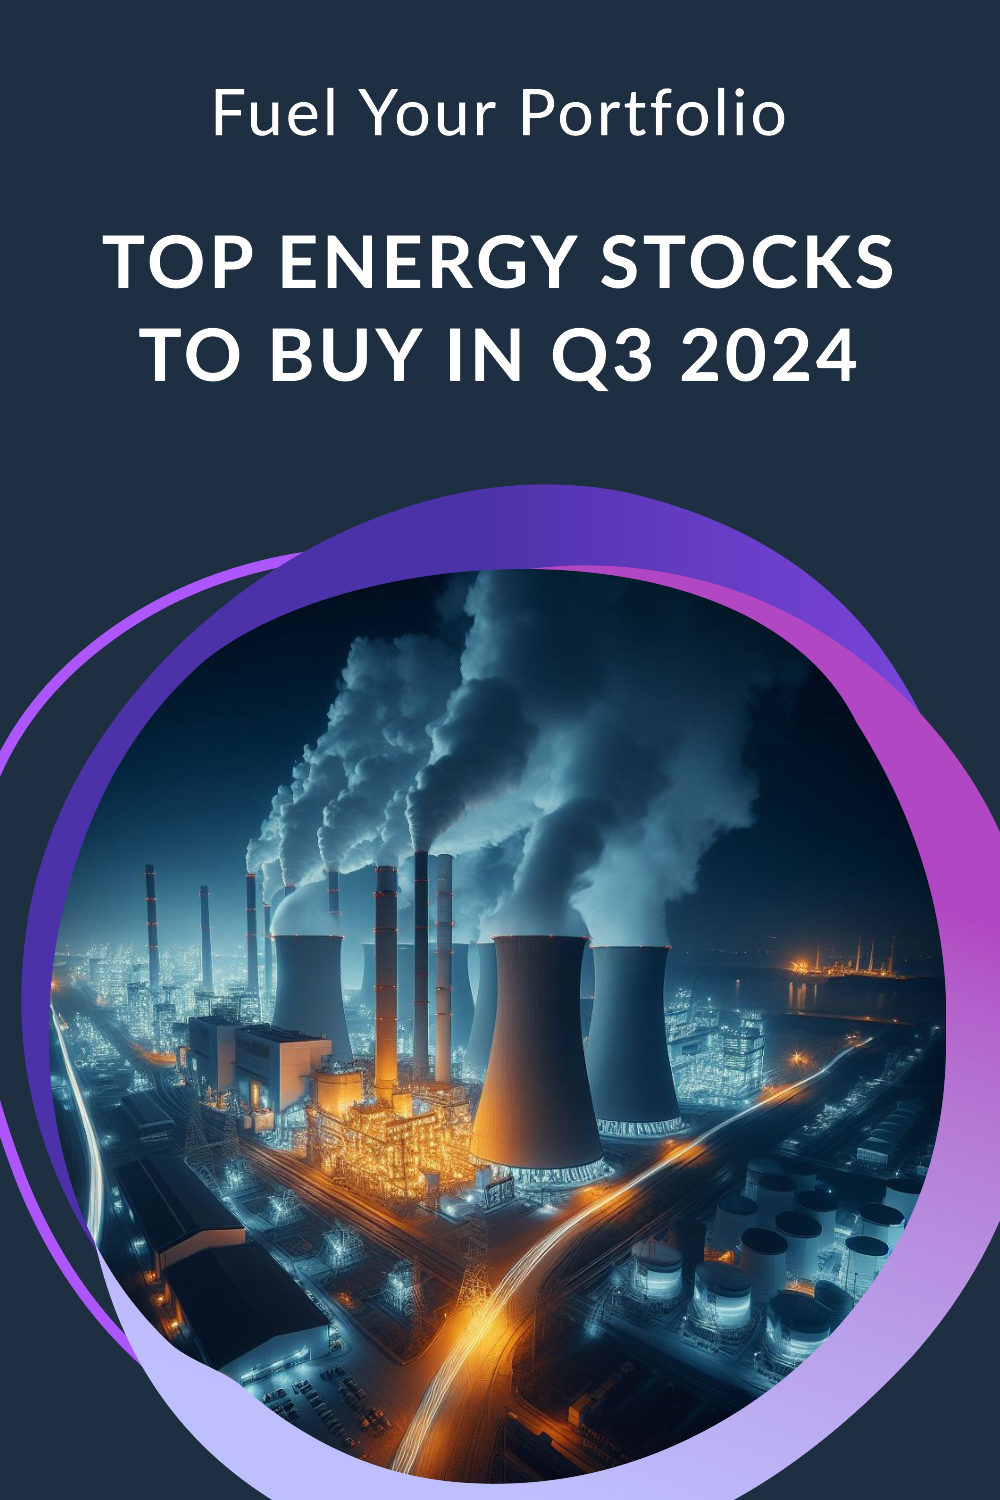 Fuel your portfolio: Top energy stocks to buy in Q3 2024